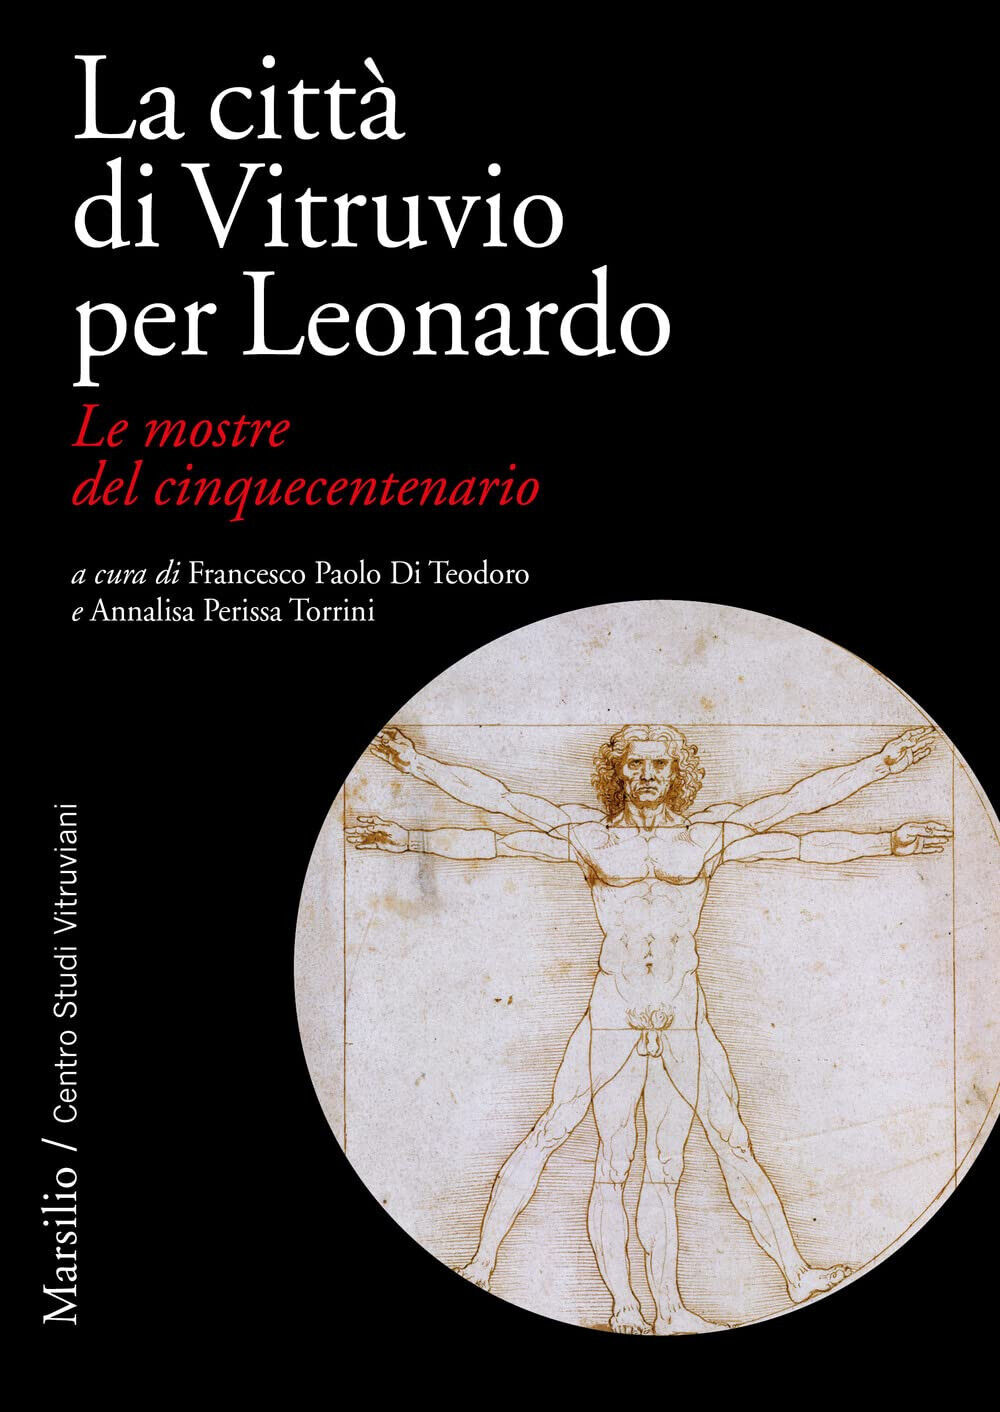 La citt? di Vitruvio per Leonardo. Le mostre del cinquecentenario-Marsilio, 2023 libro usato